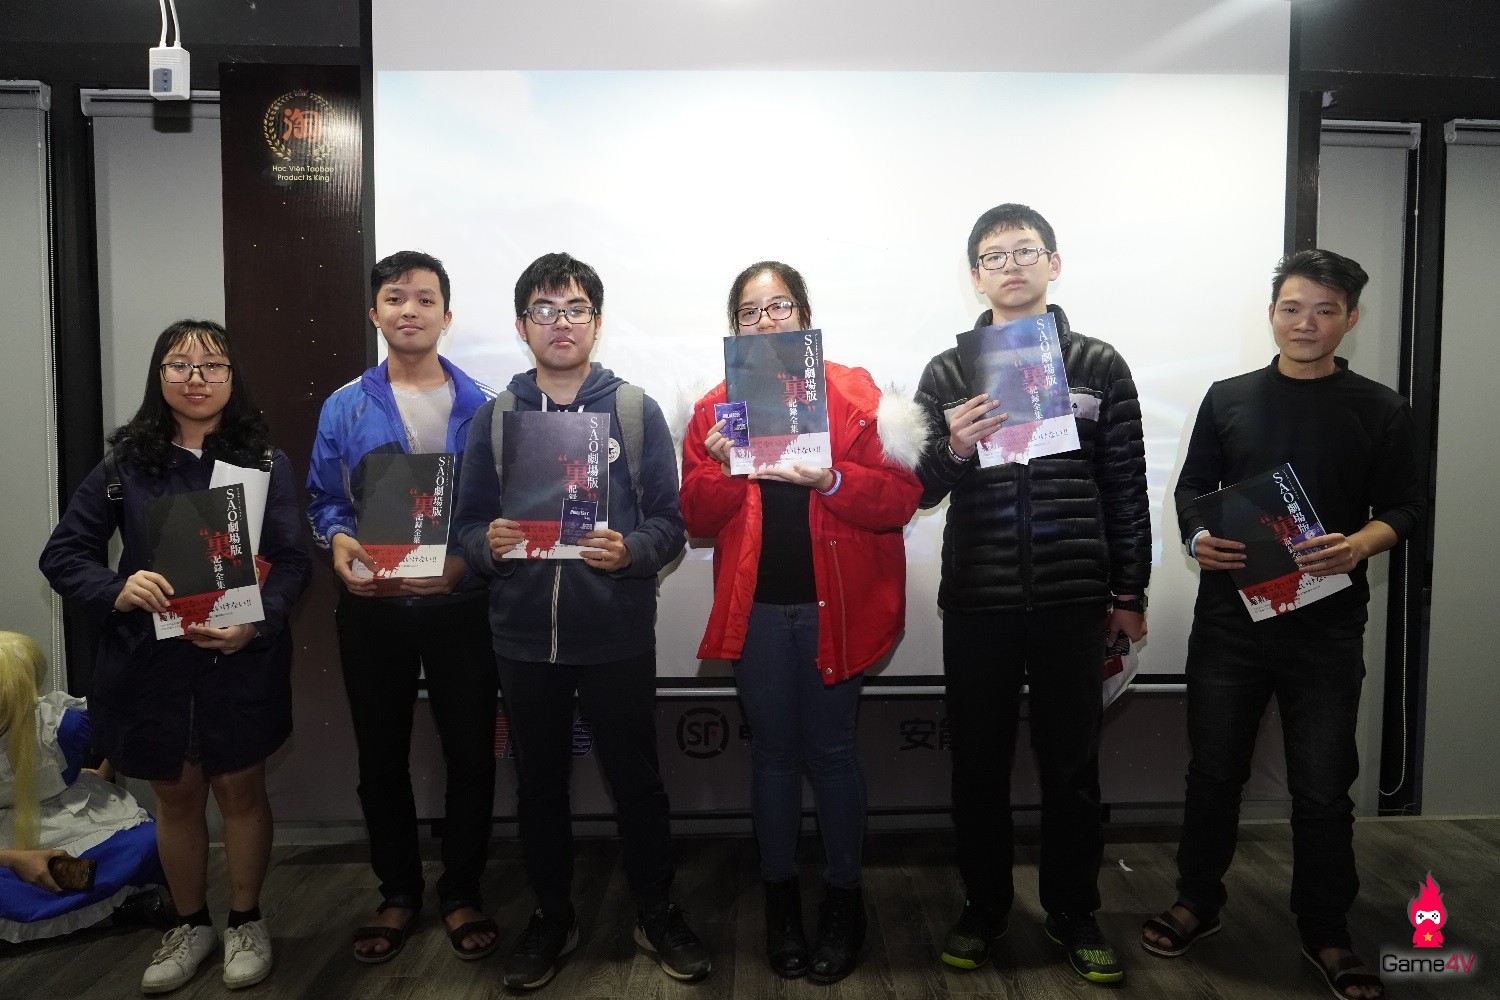 Cộng đồng fan Sword Art Online ở Việt Nam tháng 3 sôi động với nhiều sự kiện đã diễn ra